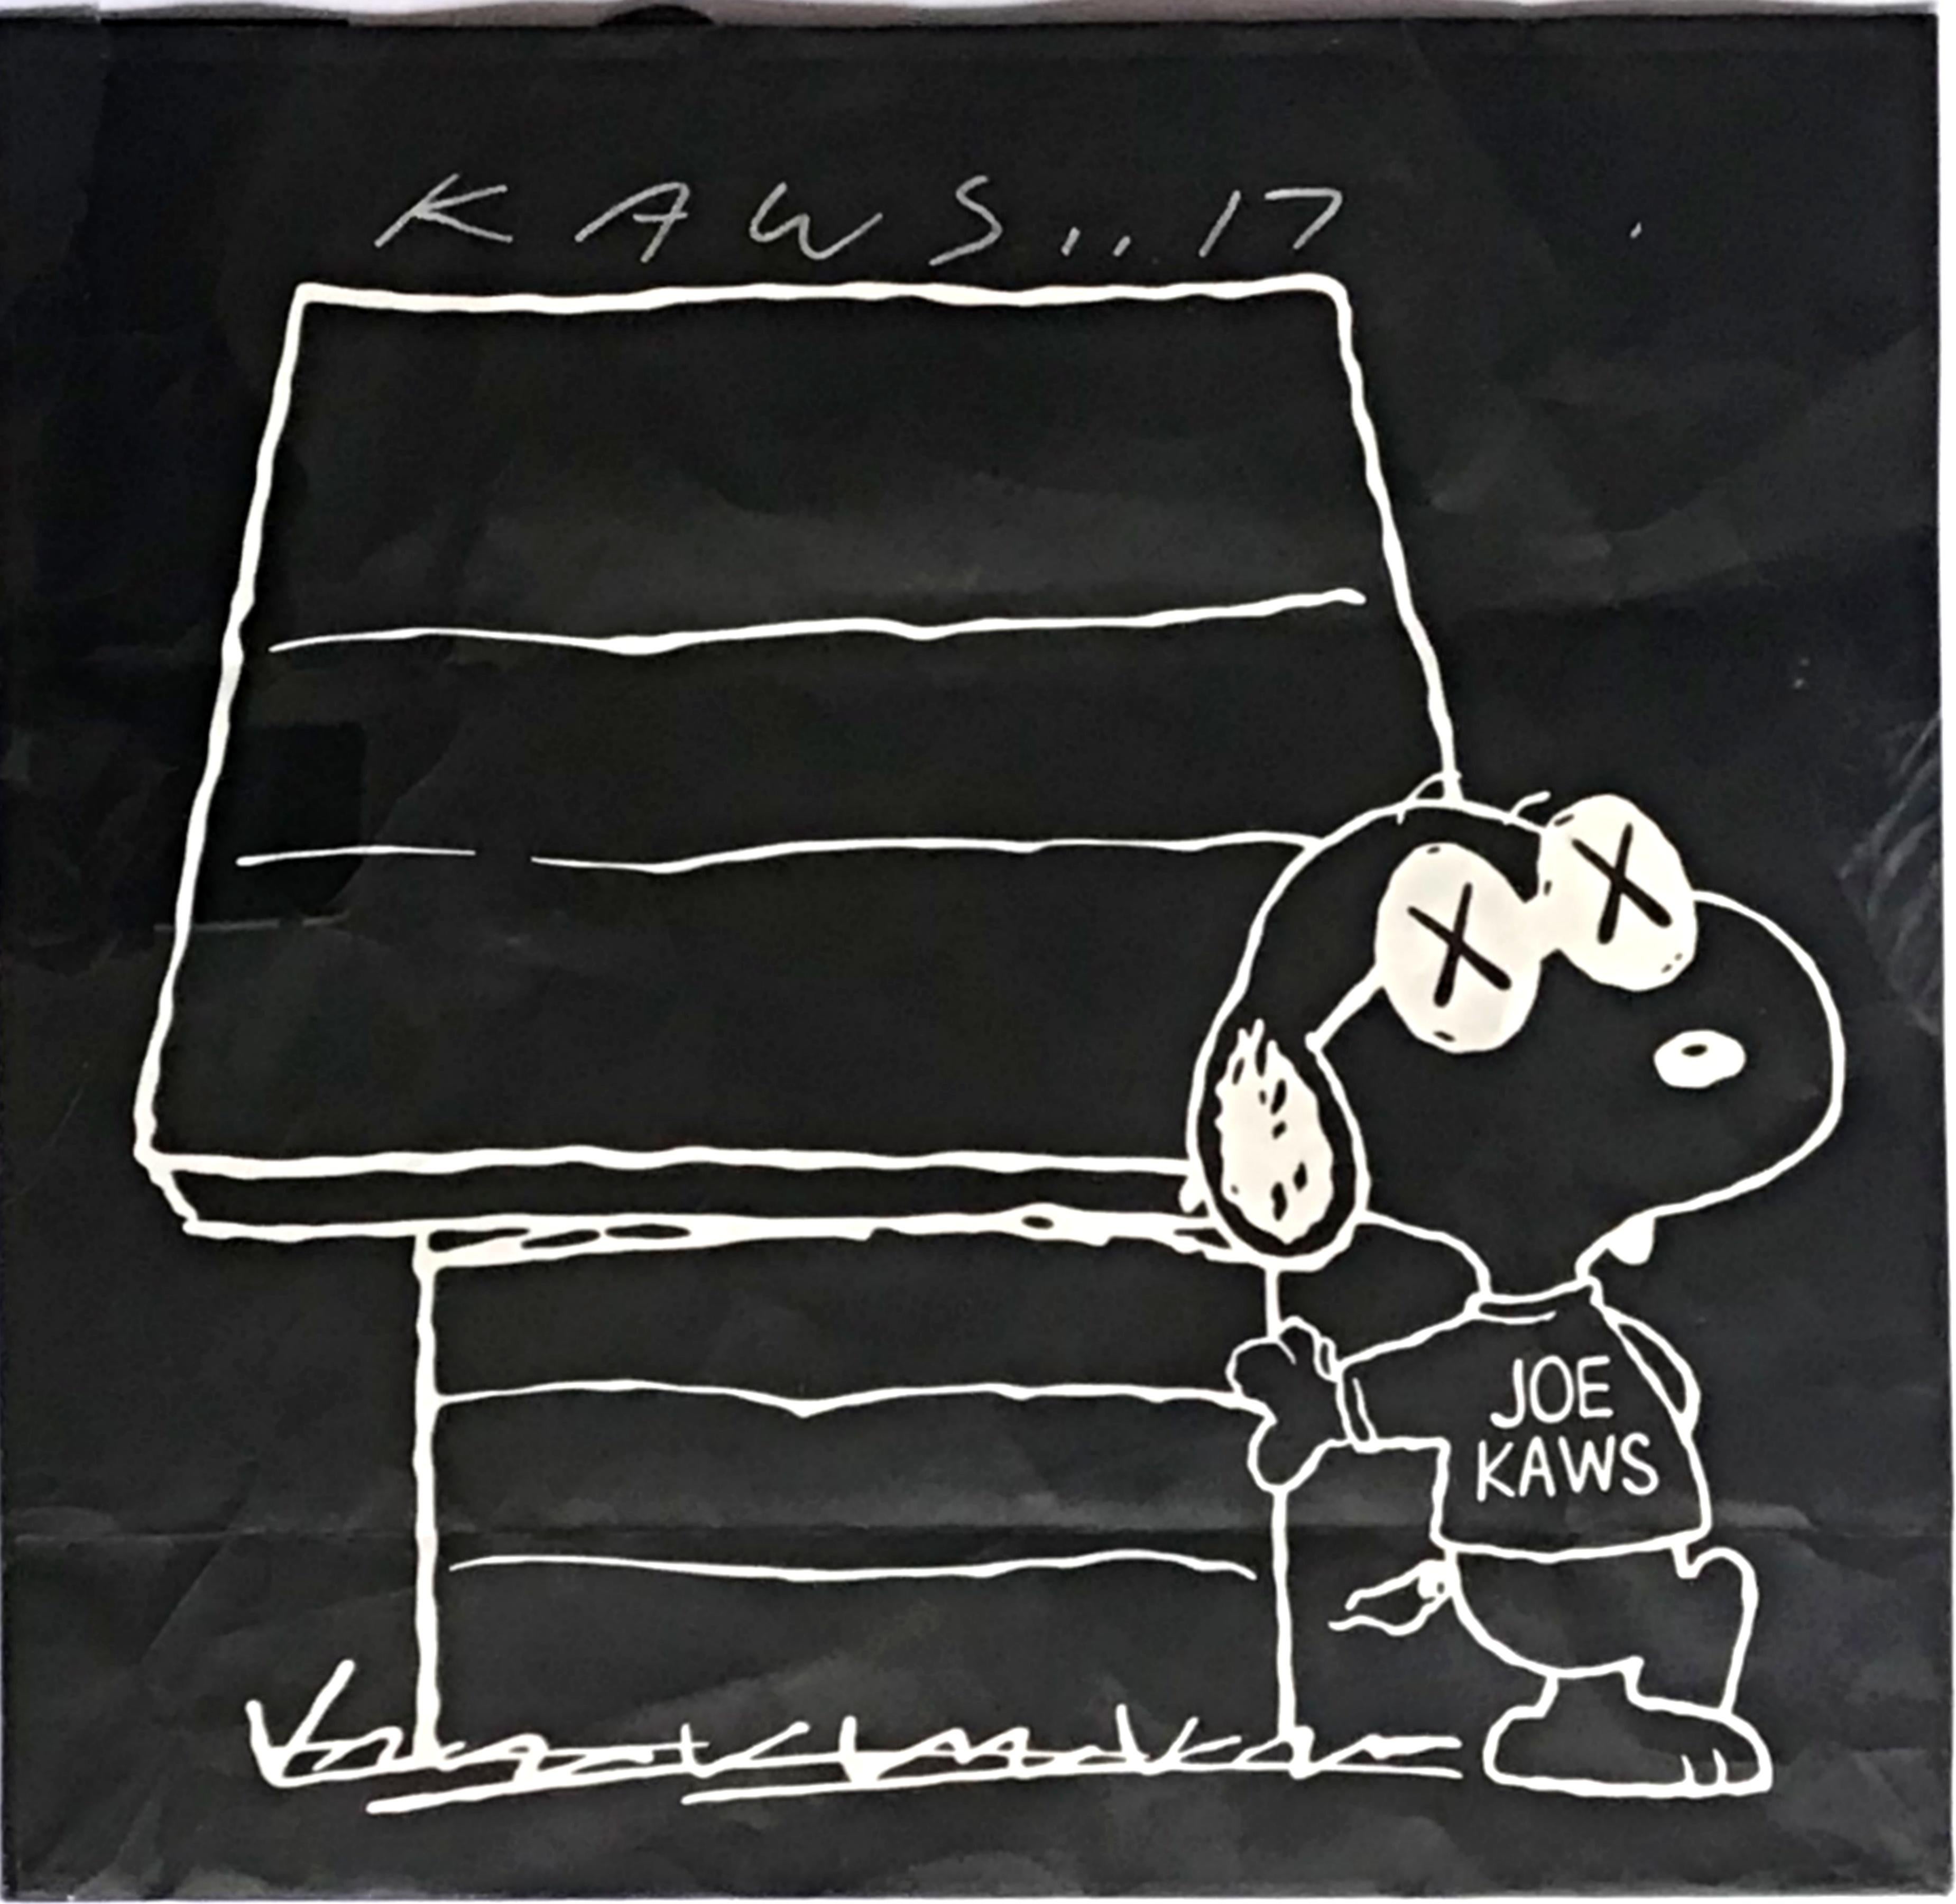 KAWS
Künstlerisch gestaltete Einkaufstasche (Handsigniert von KAWS), 2017
Offsetlithografie auf Einkaufstasche. 
Handsigniert und datiert von KAWS auf der Vorderseite
15 1/4 × 15 1/4 Zoll
Ungerahmt
Limitierte und handsignierte KAWS-Einkaufstasche